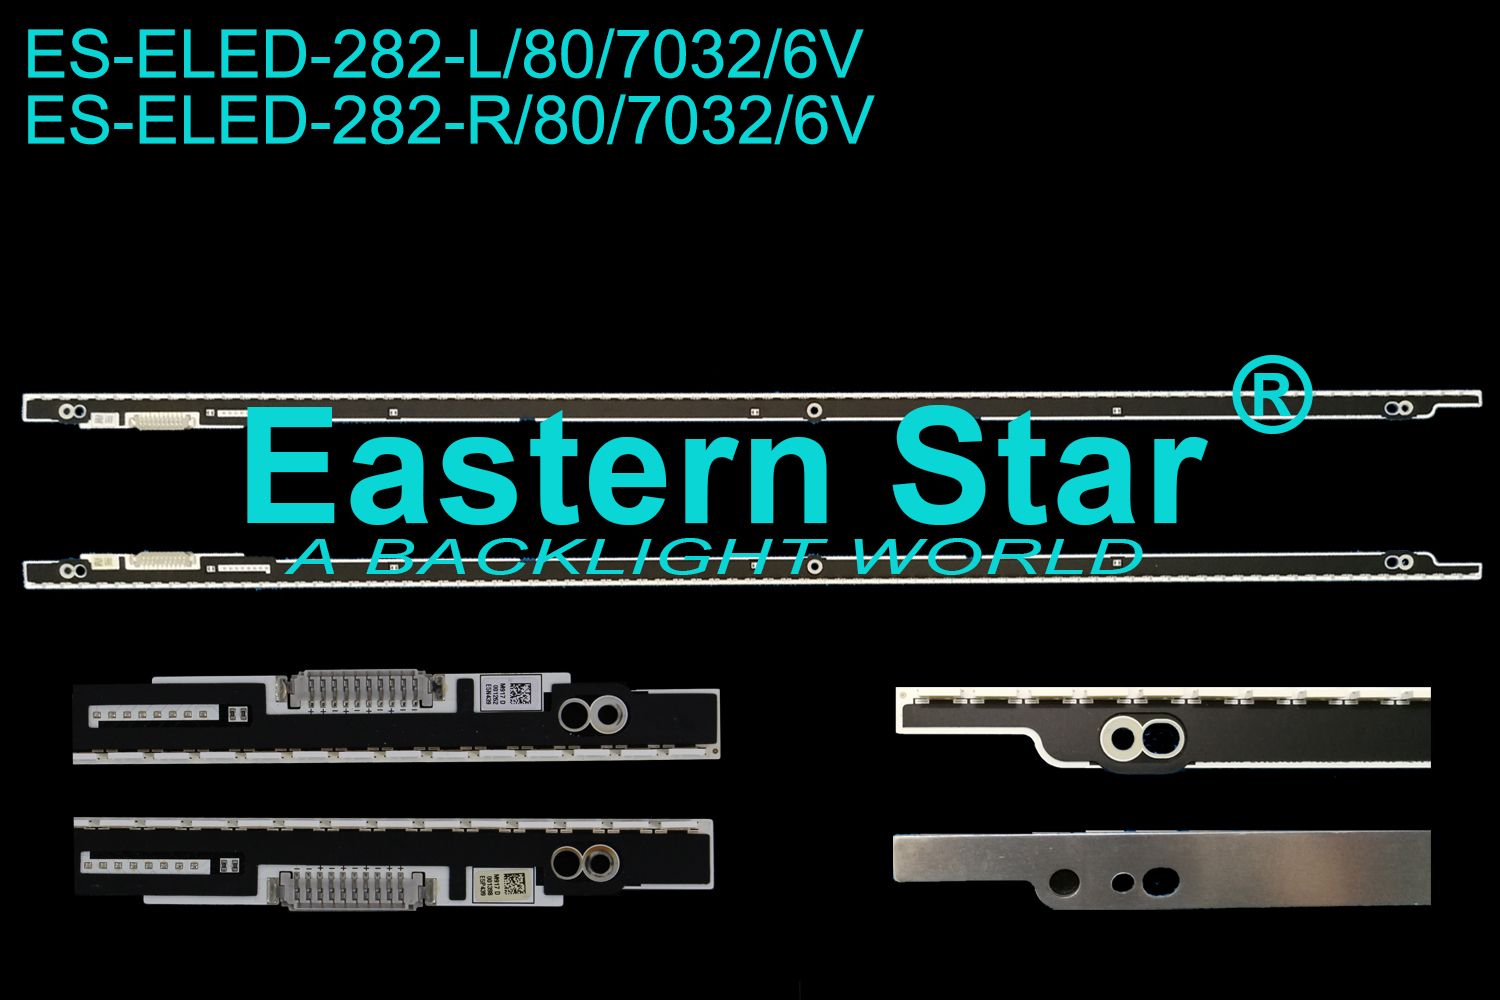 ES-ELED-282 ELED/EDGE TV backlight use for Samsung 55''  2012SVS55 7032SNB LEFT80/RIGHT80 LED STRIPS(2)